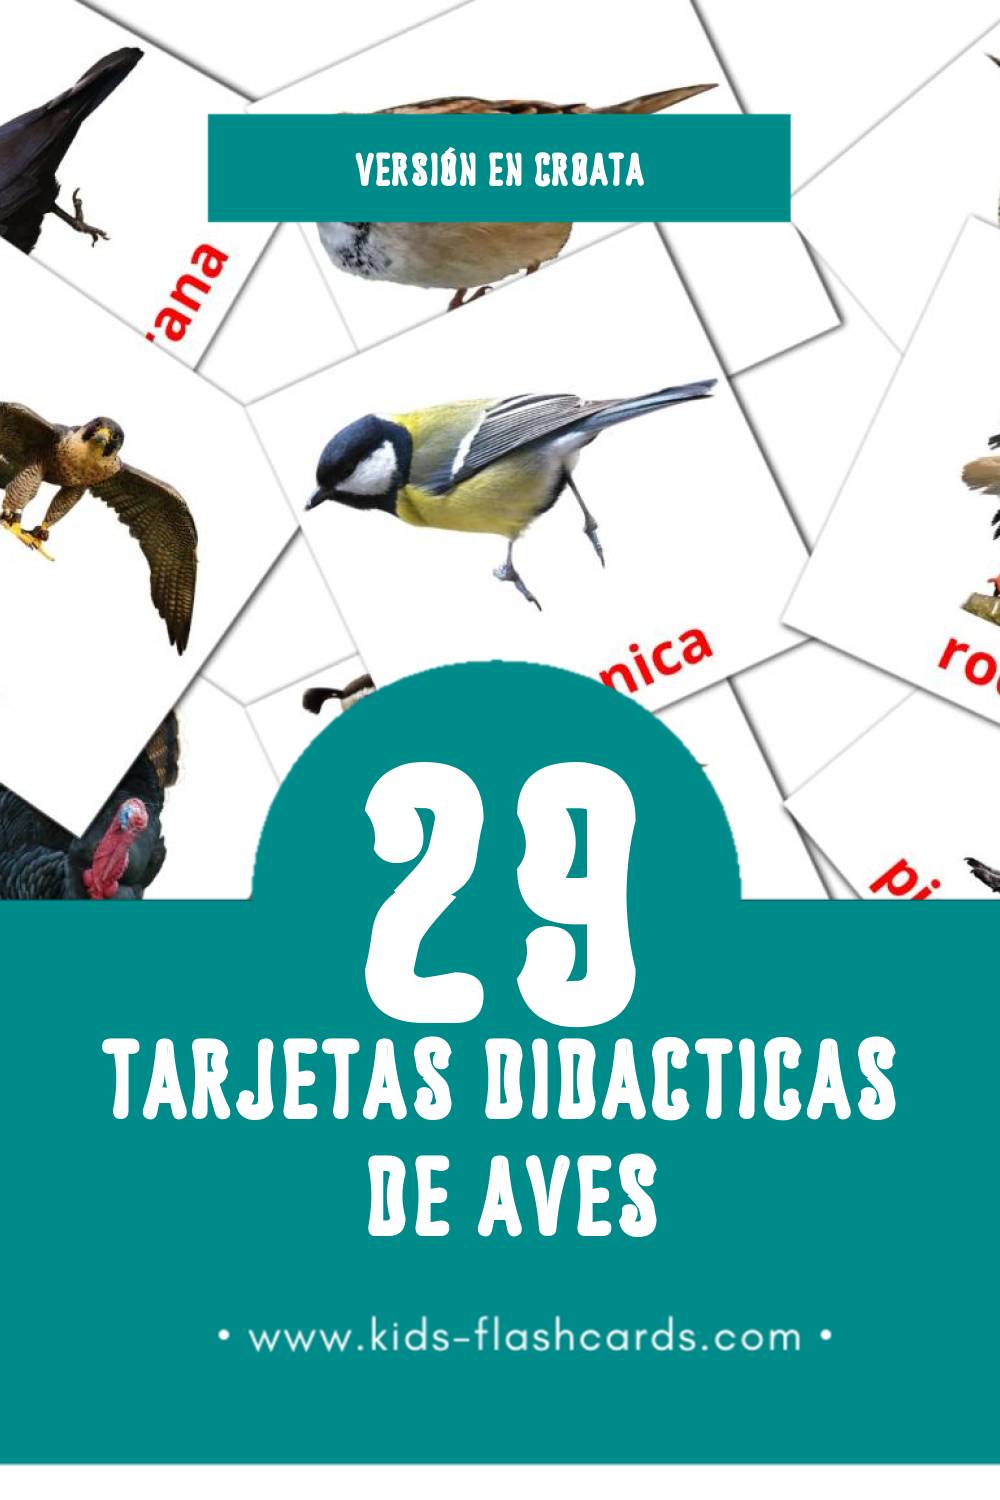 Tarjetas visuales de ptice para niños pequeños (29 tarjetas en Croata)